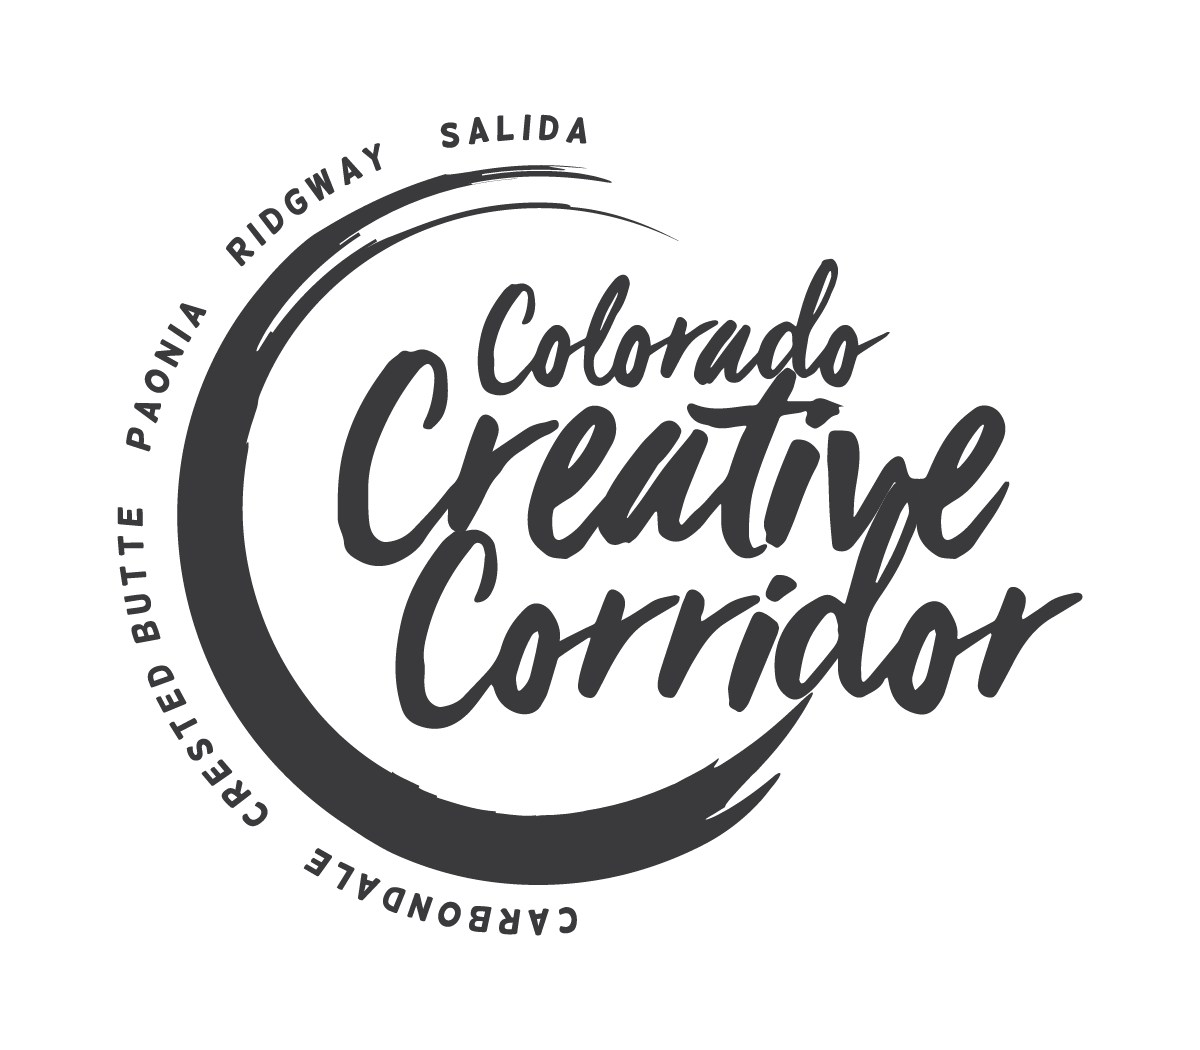 Colordo Creative Corridor logo